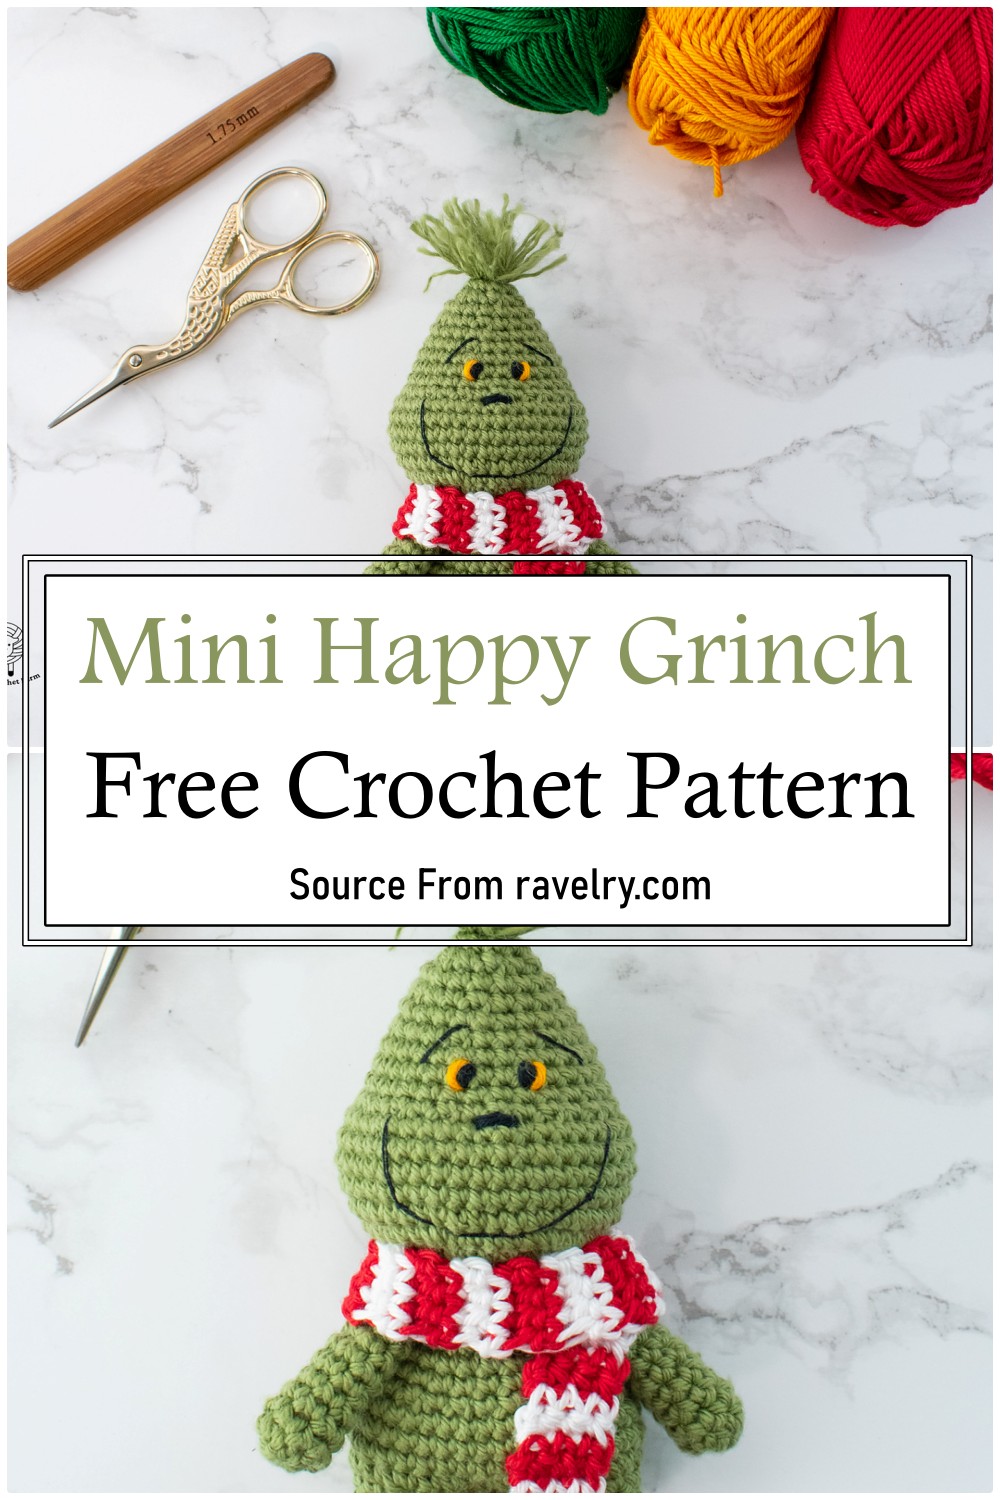 Mini Happy Grinch